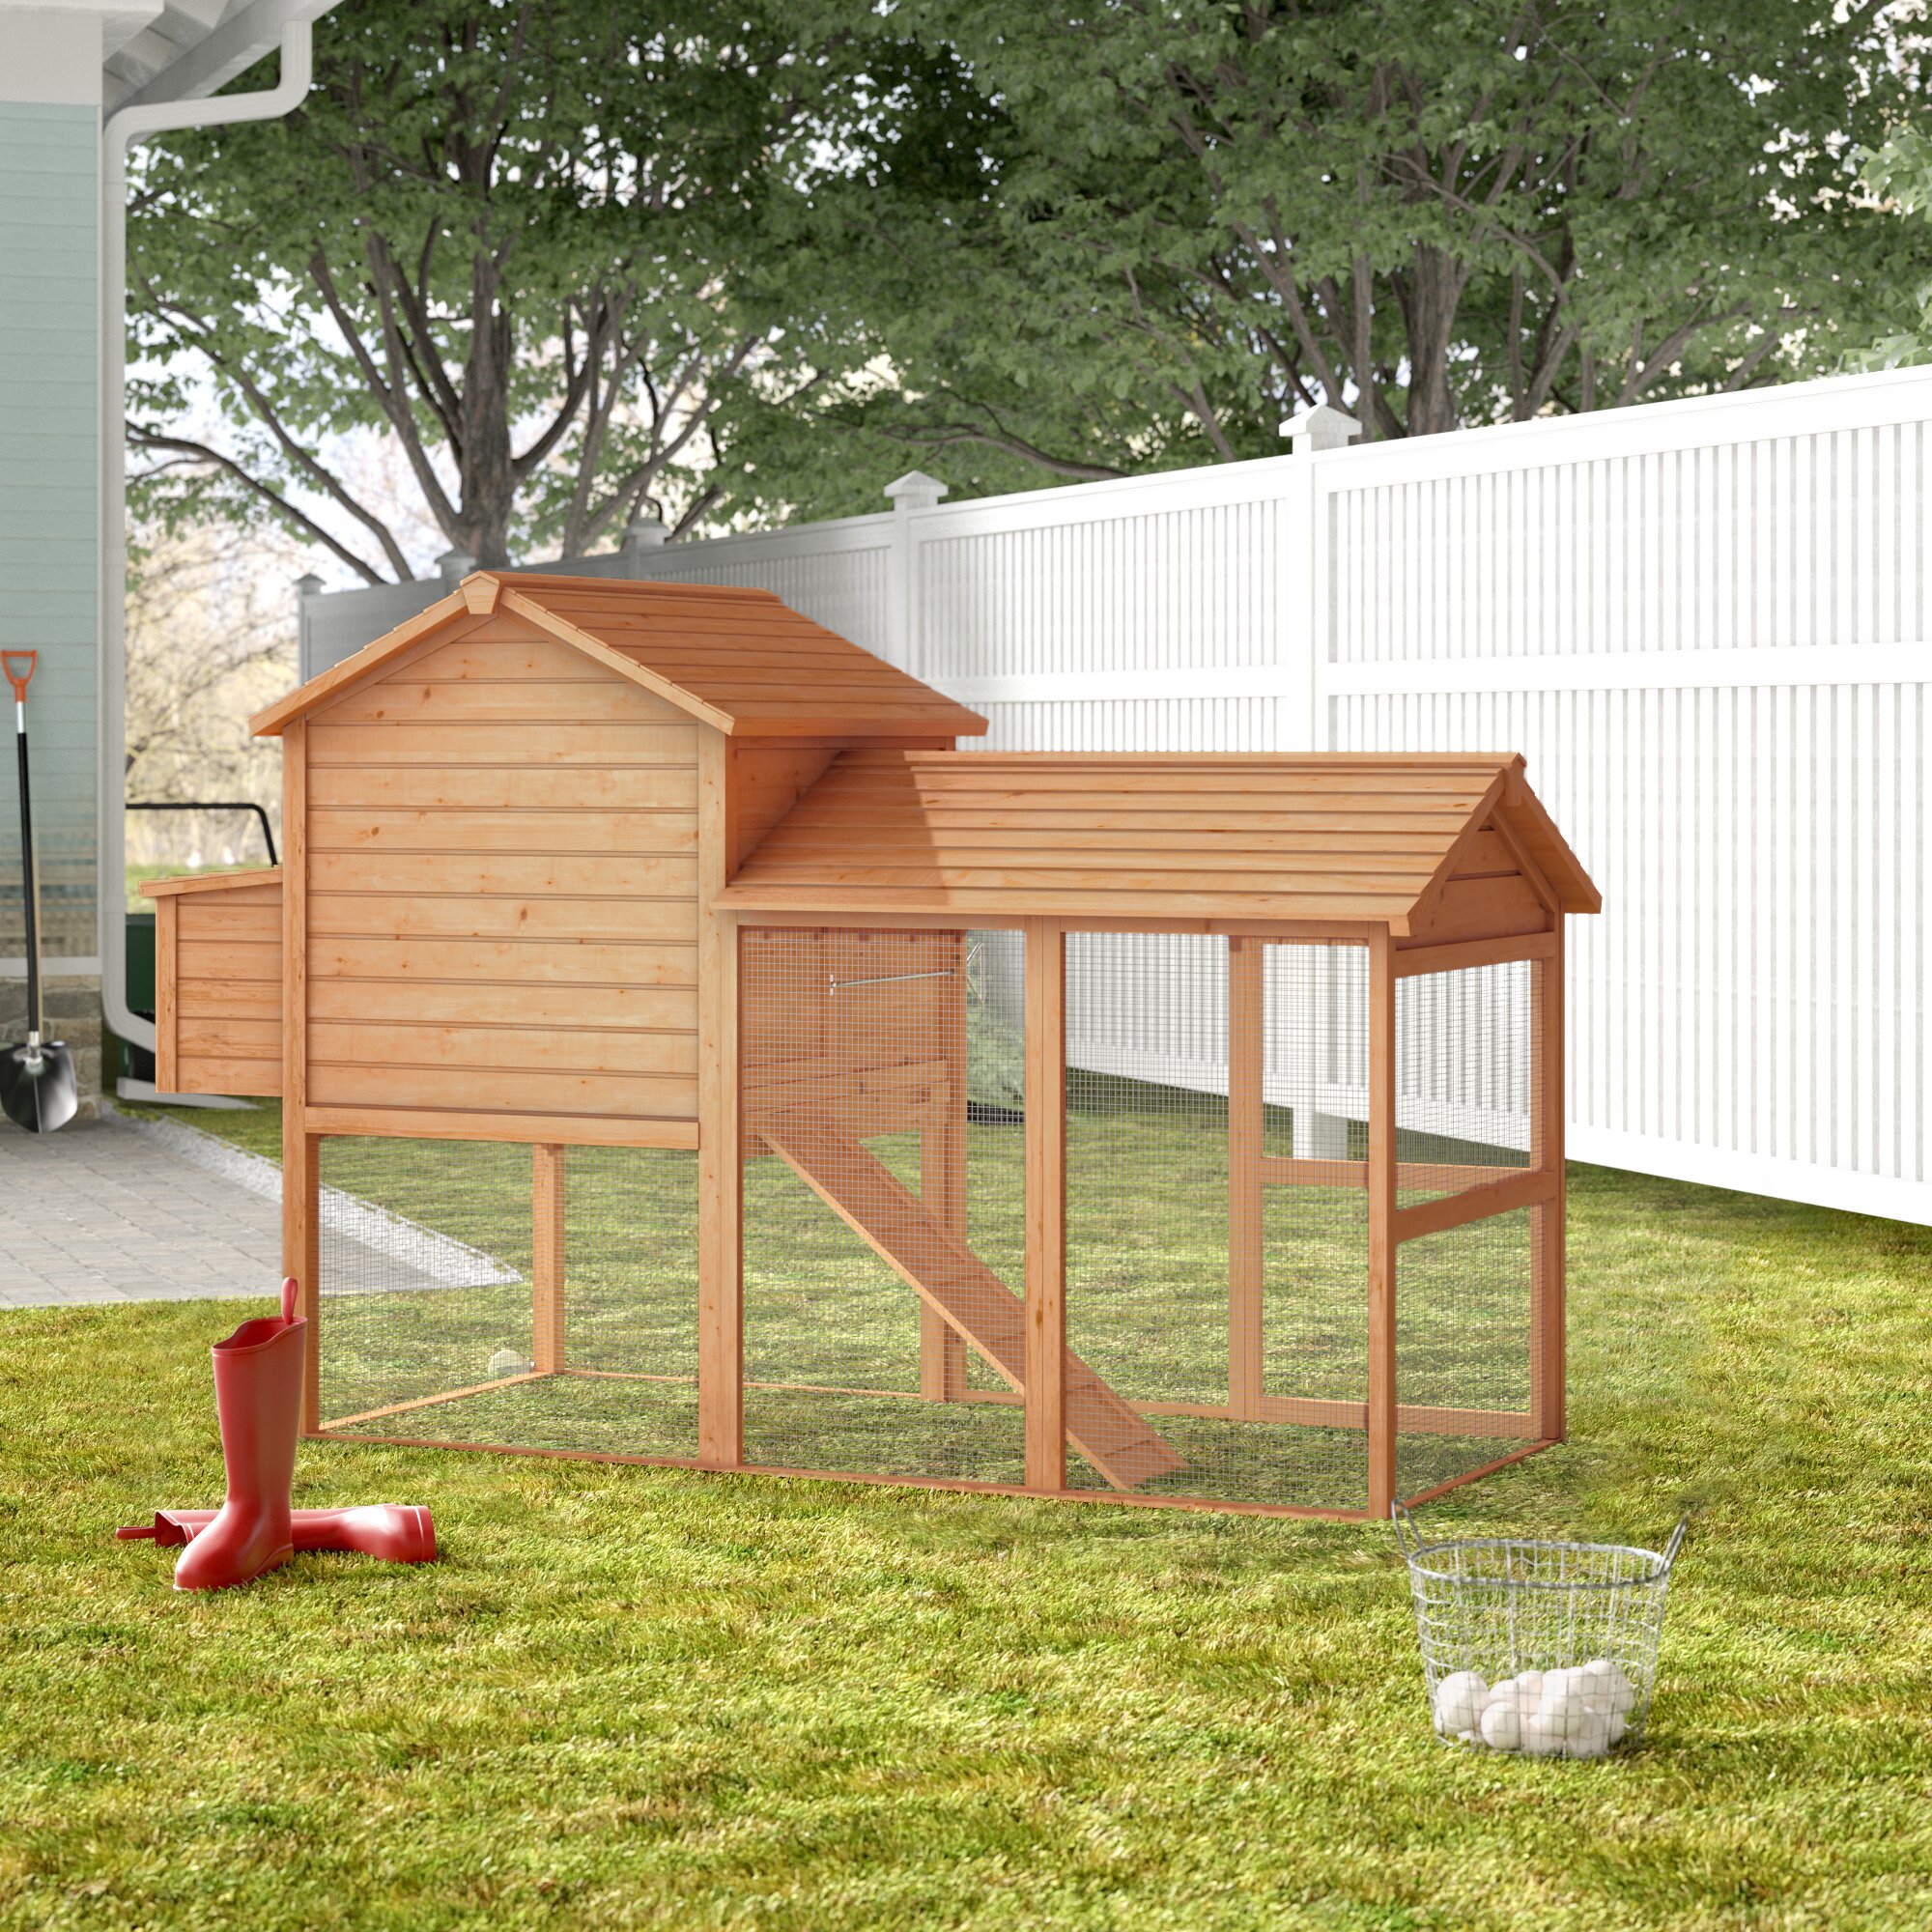 Tucker Murphy Pet Belinda Deluxe Portable Backyard Chicken Coop With Nesting Box Reviews